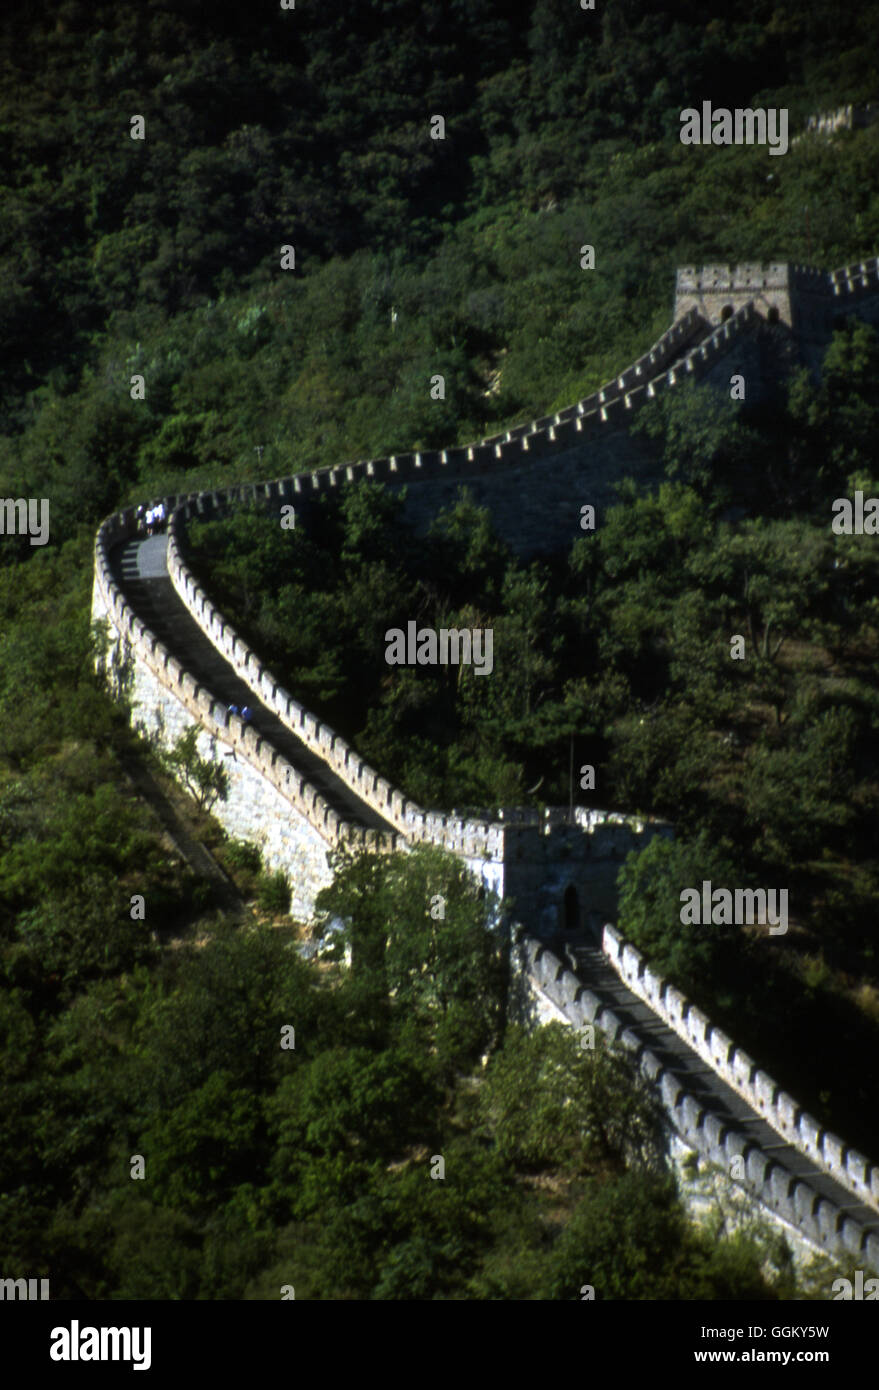 Der Mu Tian Yu Abschnitt der chinesischen Mauer. In diesem 2-Meile-langen Abschnitt gibt es 22 Wachtürme. Peking – China. Stockfoto